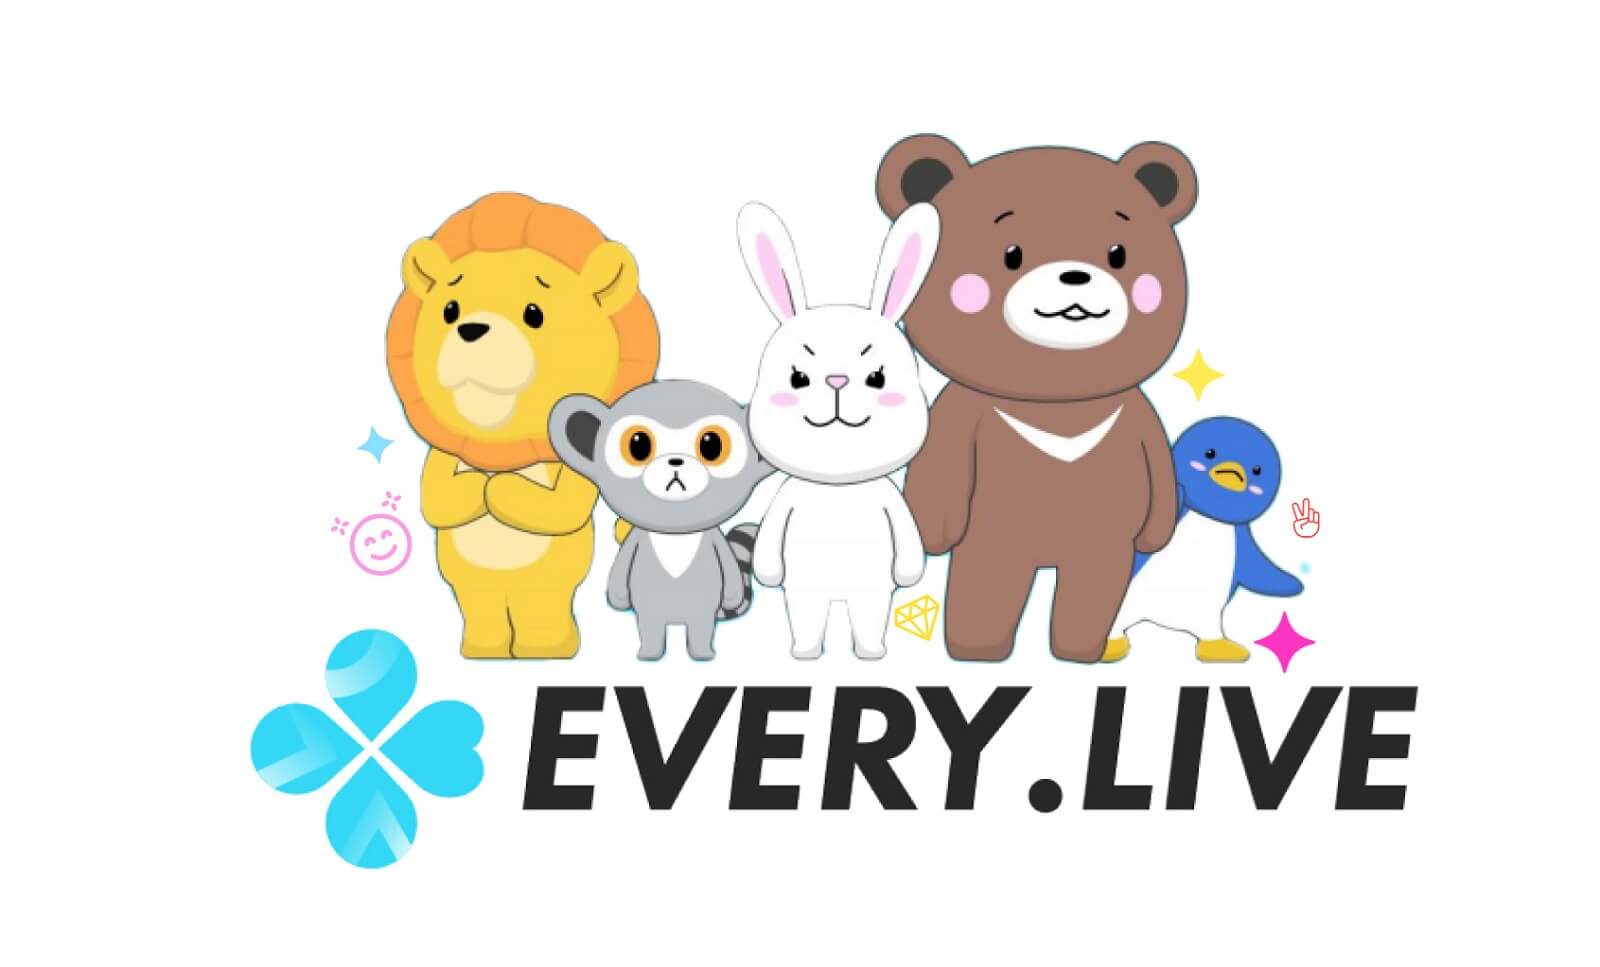 EVERY .LIVE、安心安全、2021年リリース最新の国産動画配信アプリ